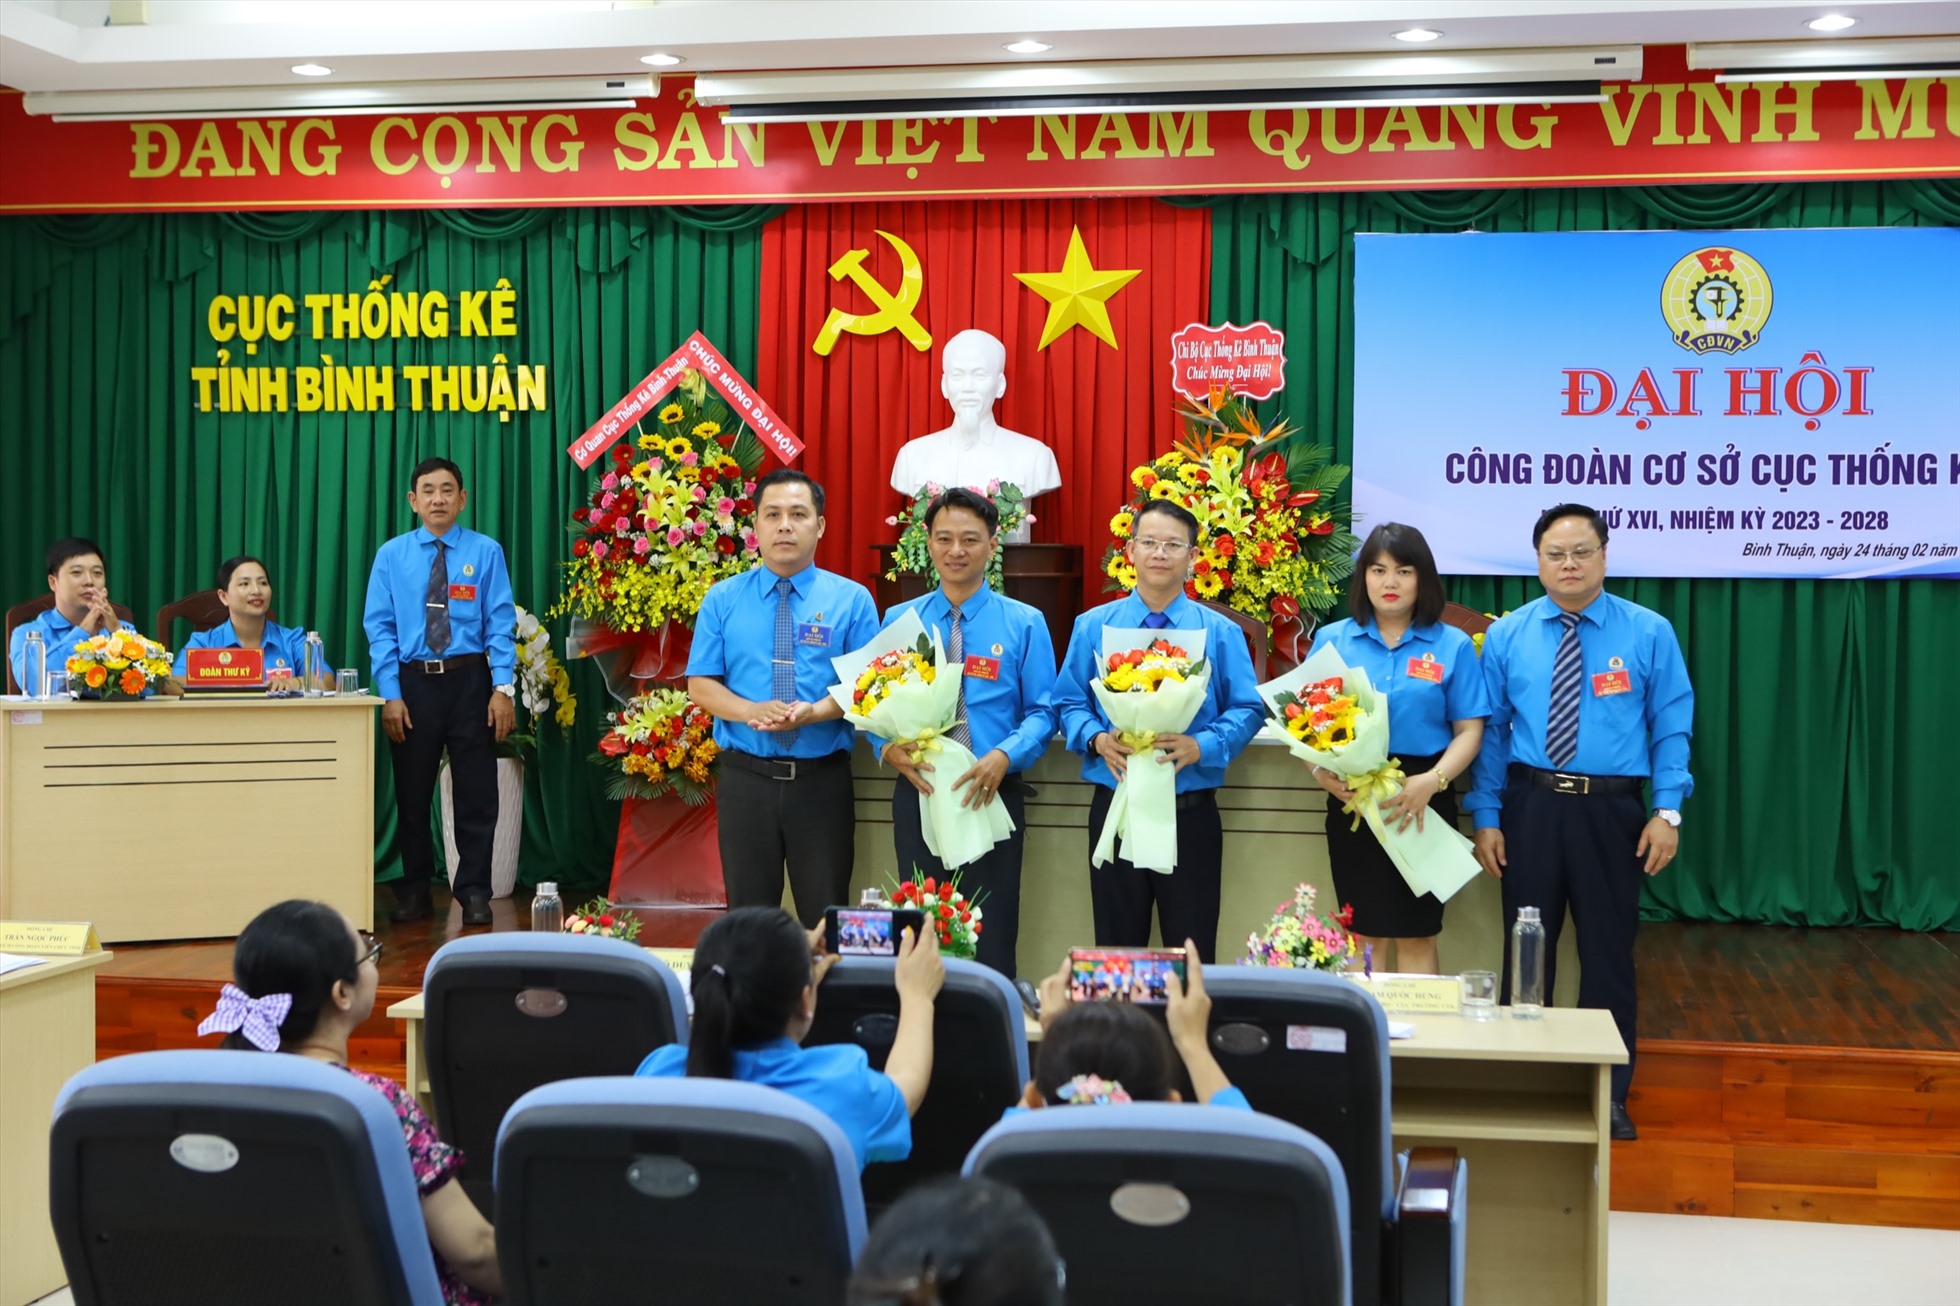 Ra mắt BCH CĐCS Cục Thống kê tỉnh Bình Thuận nhiệm kỳ 2023-2028. Ảnh: Duy Tuấn